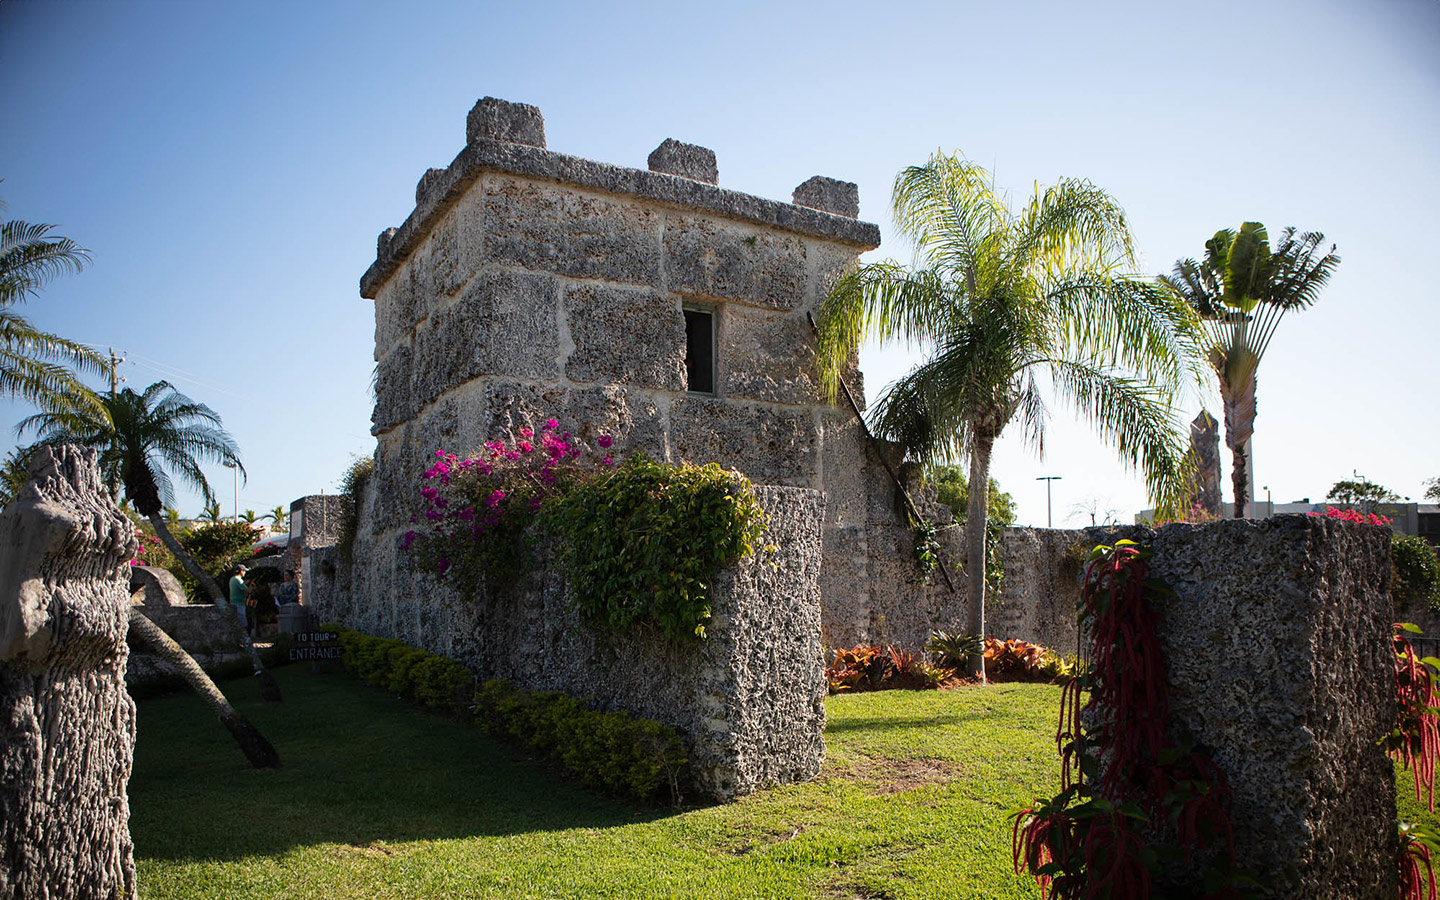 珊瑚城堡塔完全由珊瑚岩制成，有蓝天和棕榈树